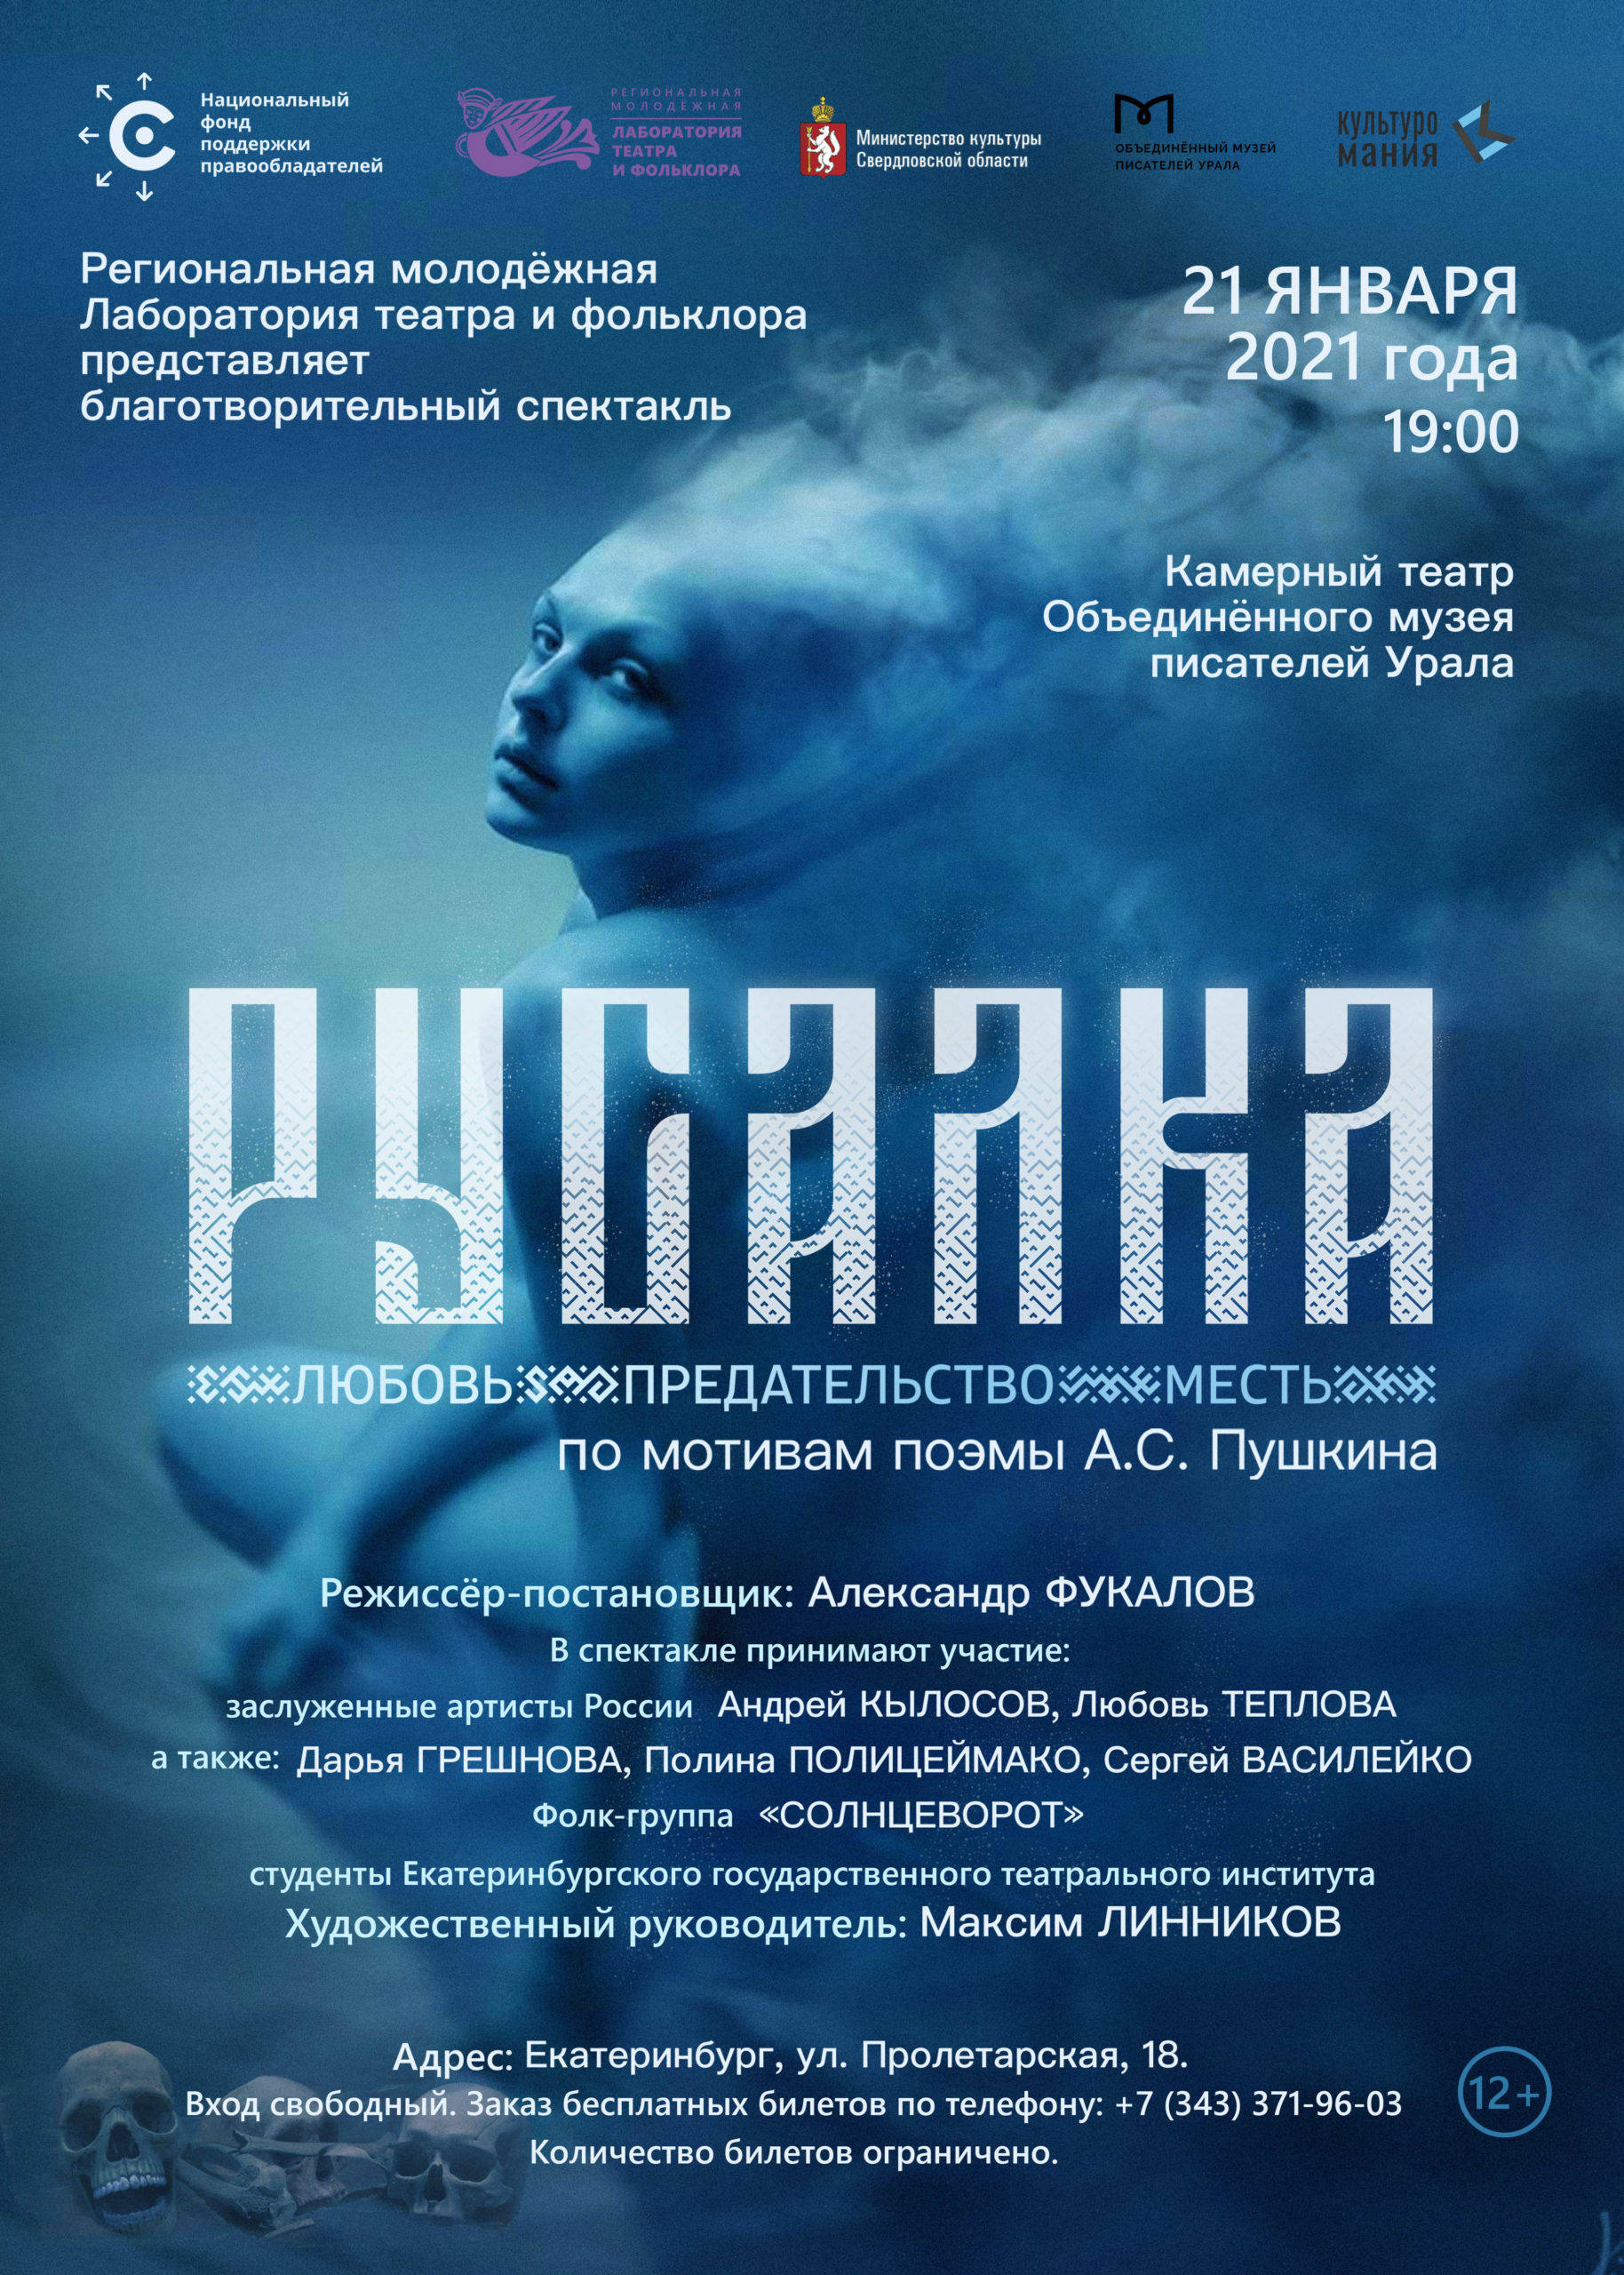 Спектакль “Русалка” открывает новый сезон 21 января